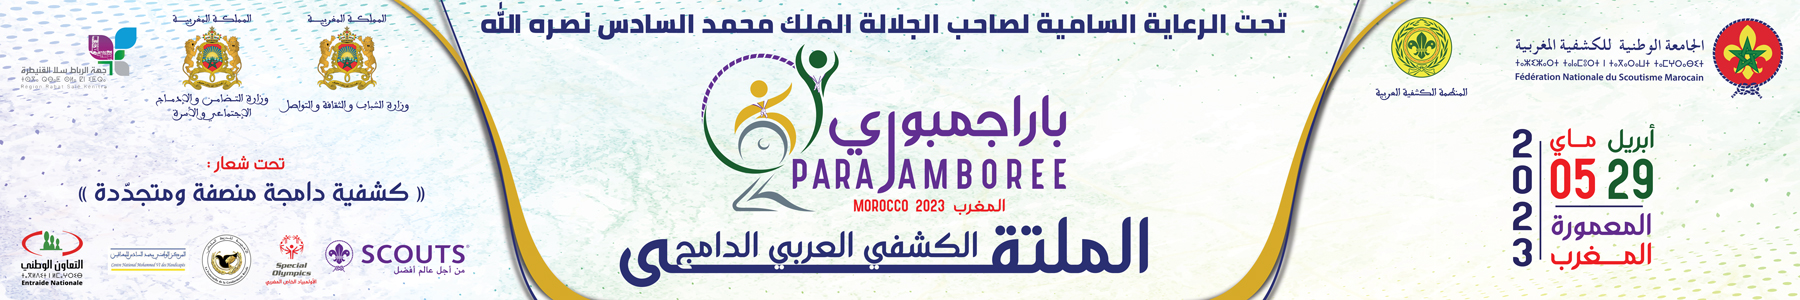 (2 الملتقى الكشفي العربي الدامج (الباراجمبوري